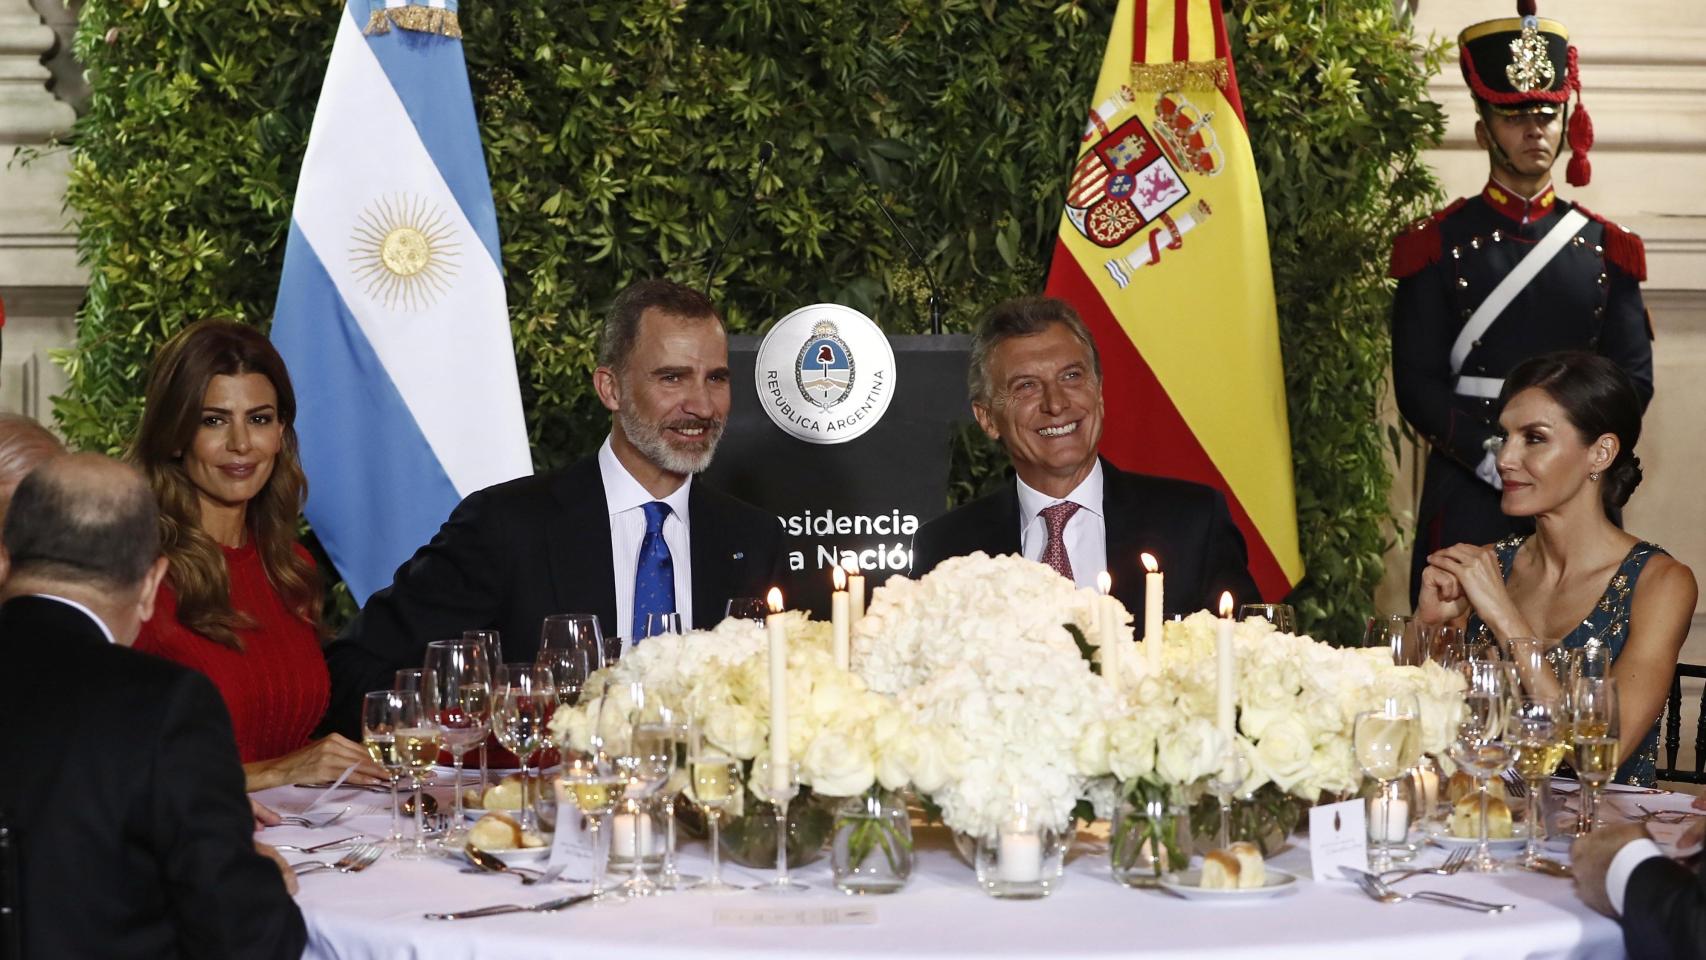 La cena de gala en honor a los Reyes en Argentina, en imágenes